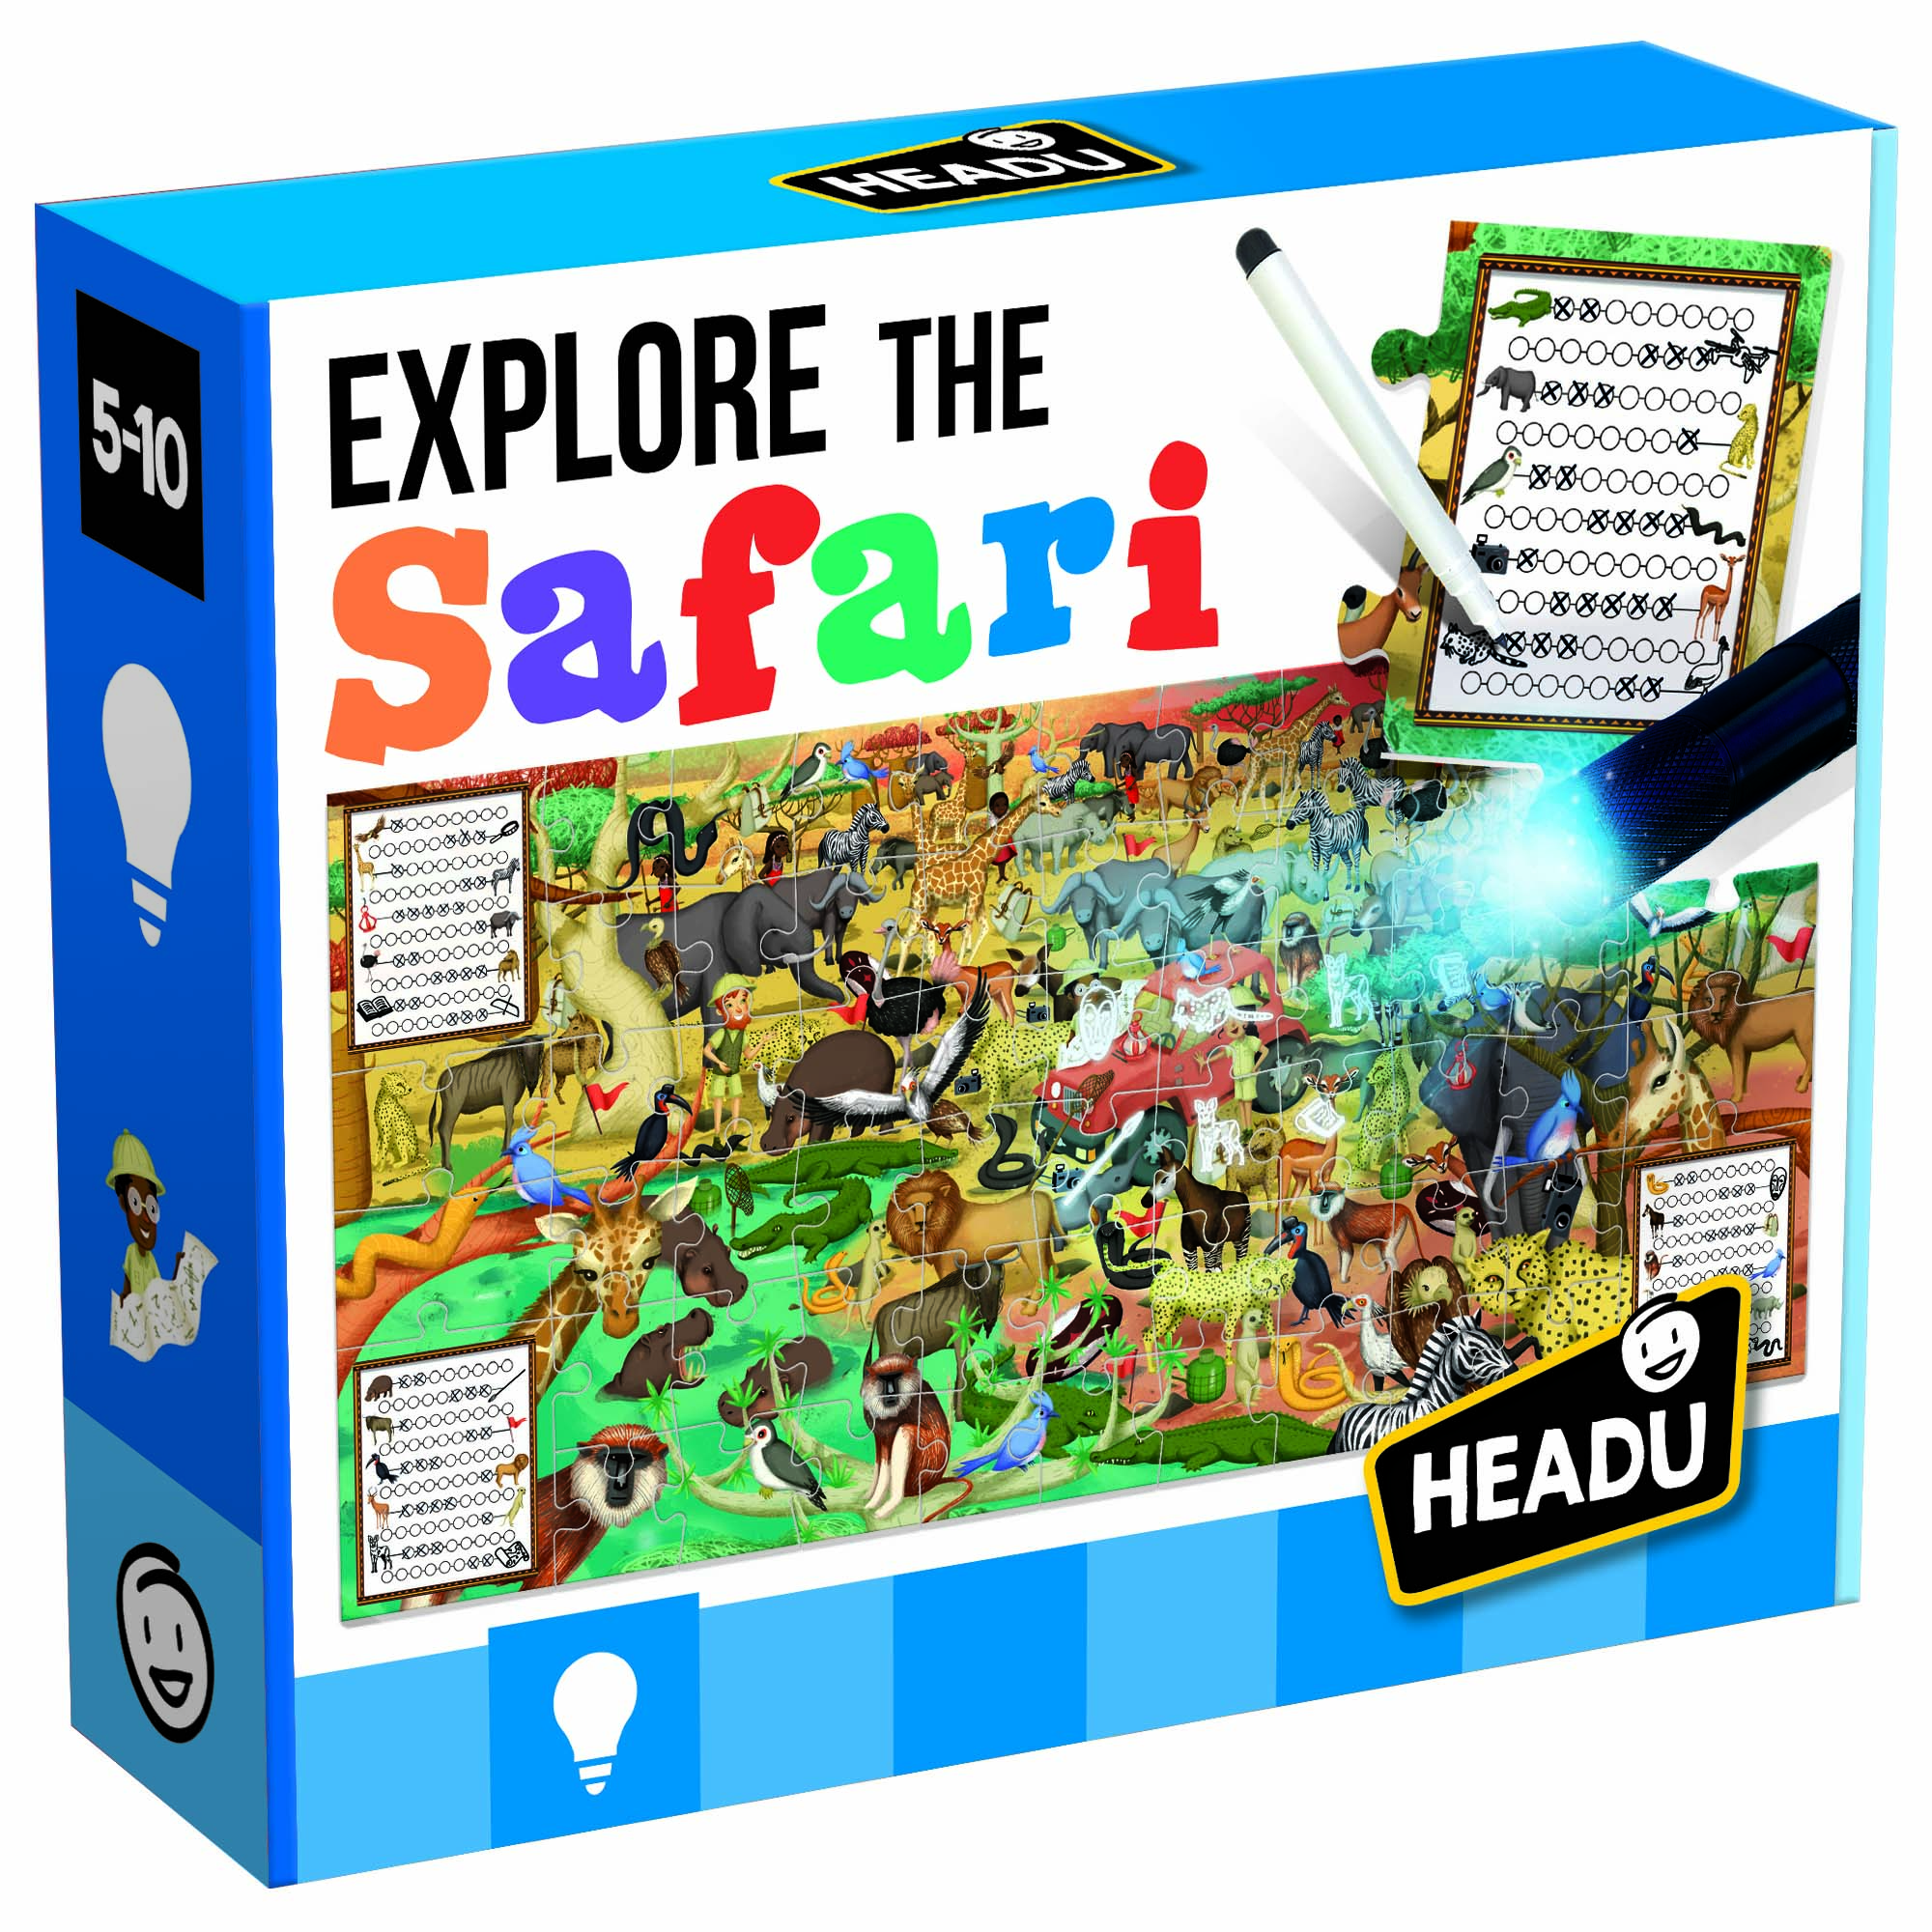 EXPLORE THE SAFARI - Bộ xếp hình và dụng cụ khám phá thế giới loài vật trên thảo nguyên cho trẻ từ 5-10 tuổi